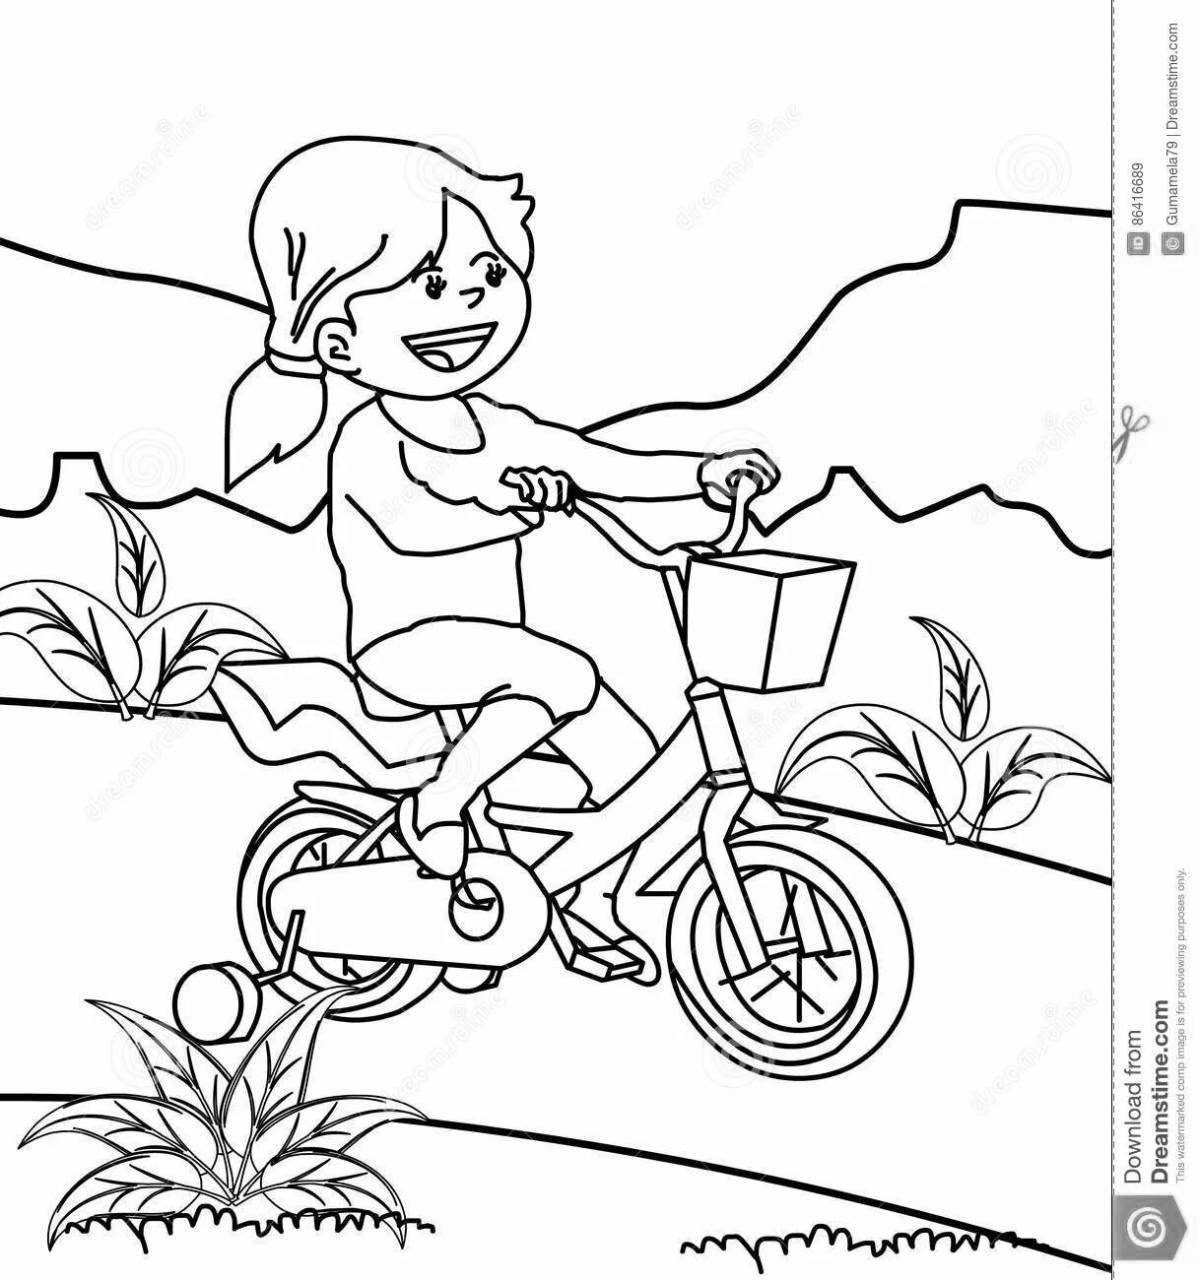 Girl on bike #3